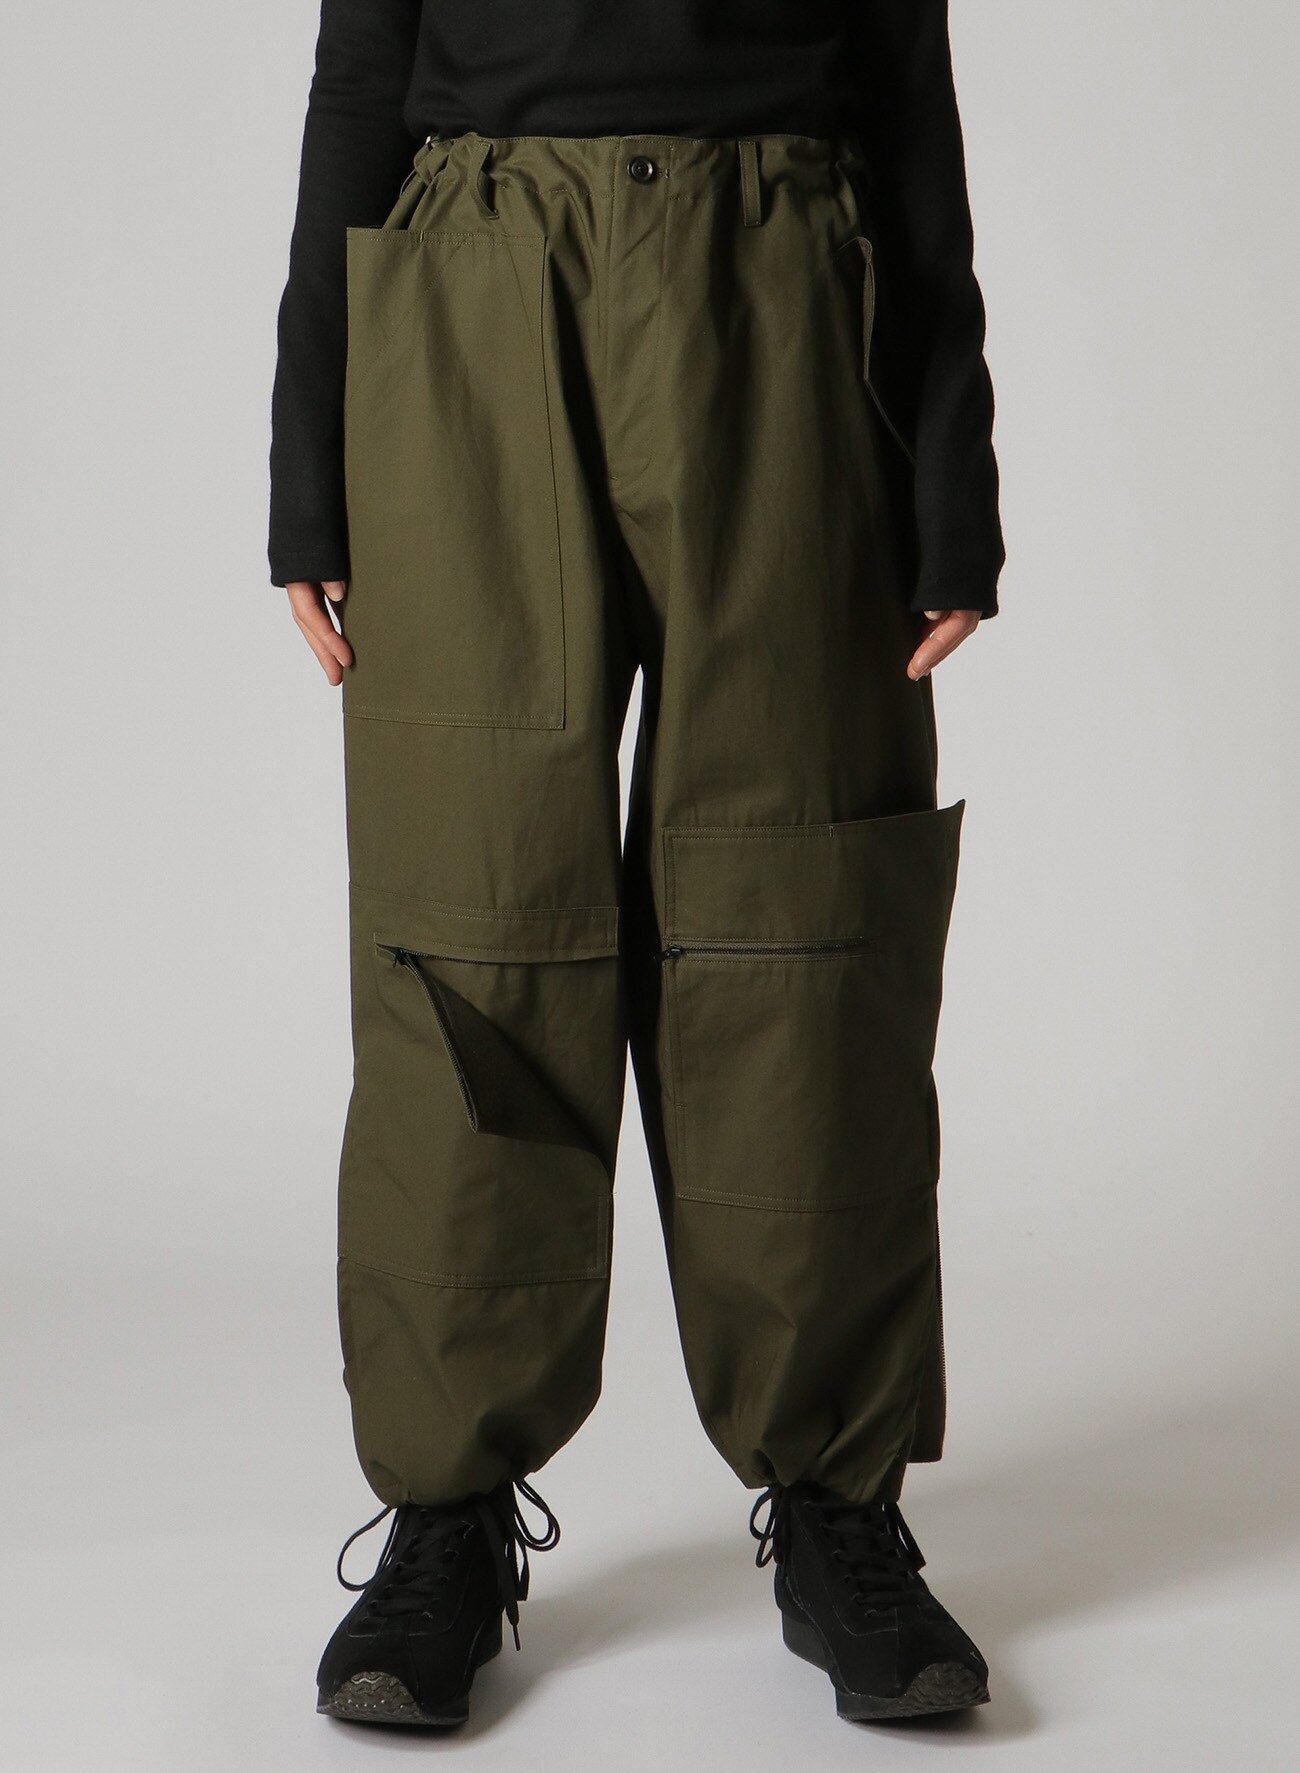 yohji yamamoto patchwork trousers